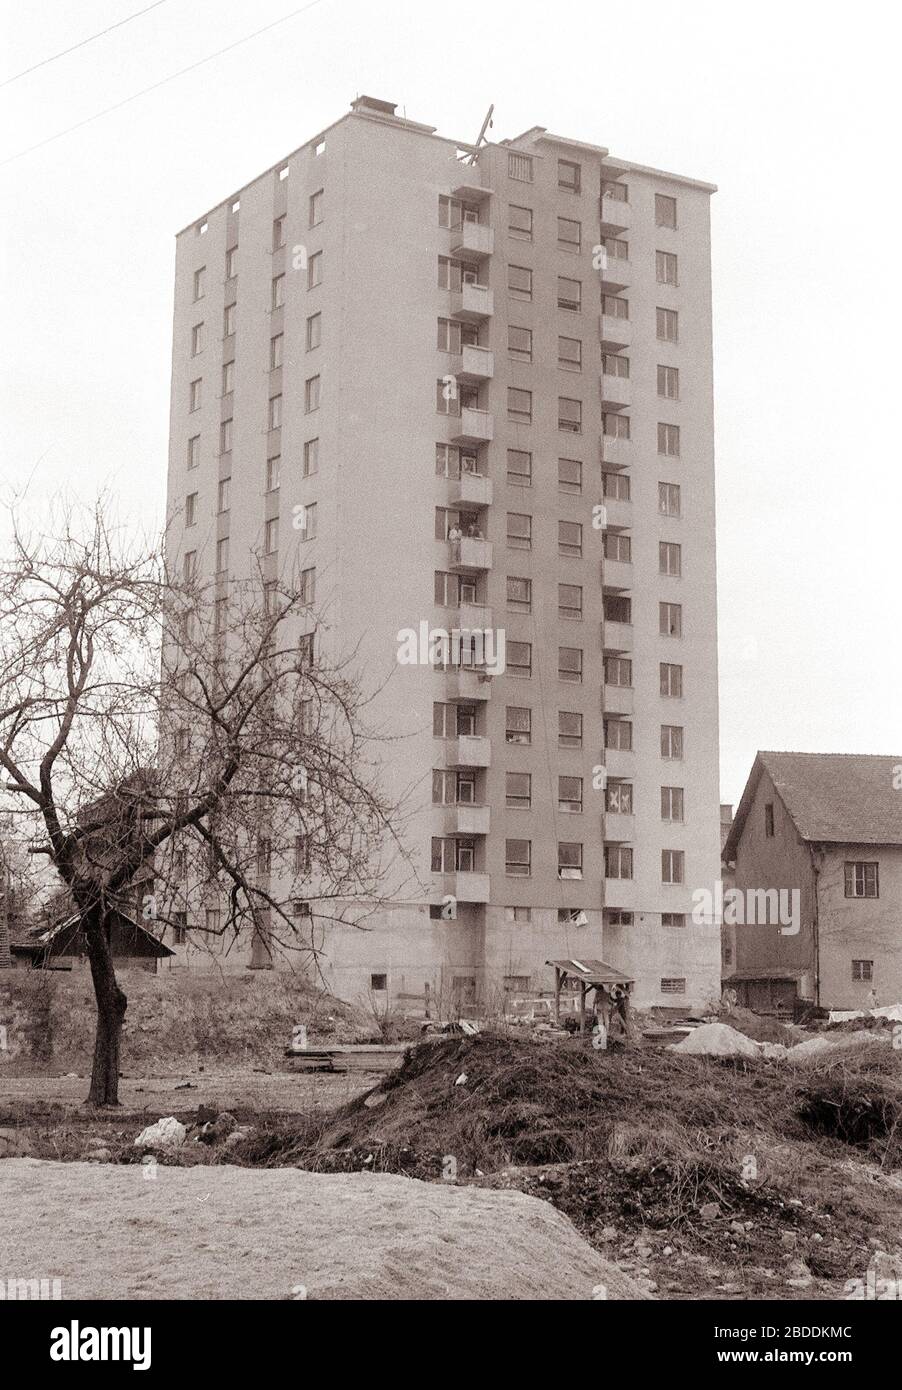 14. février 1961, Celje: V Gaberju zaključujejo gradnjo druge celjske  stolpnice. V njej bo dobil kolektiv tovarne emajlirane posode 46 stanovanj.  Jeseni ainsi graditelji rekli, da bo stolpnica do pomladi vseljiva. Zgleda,